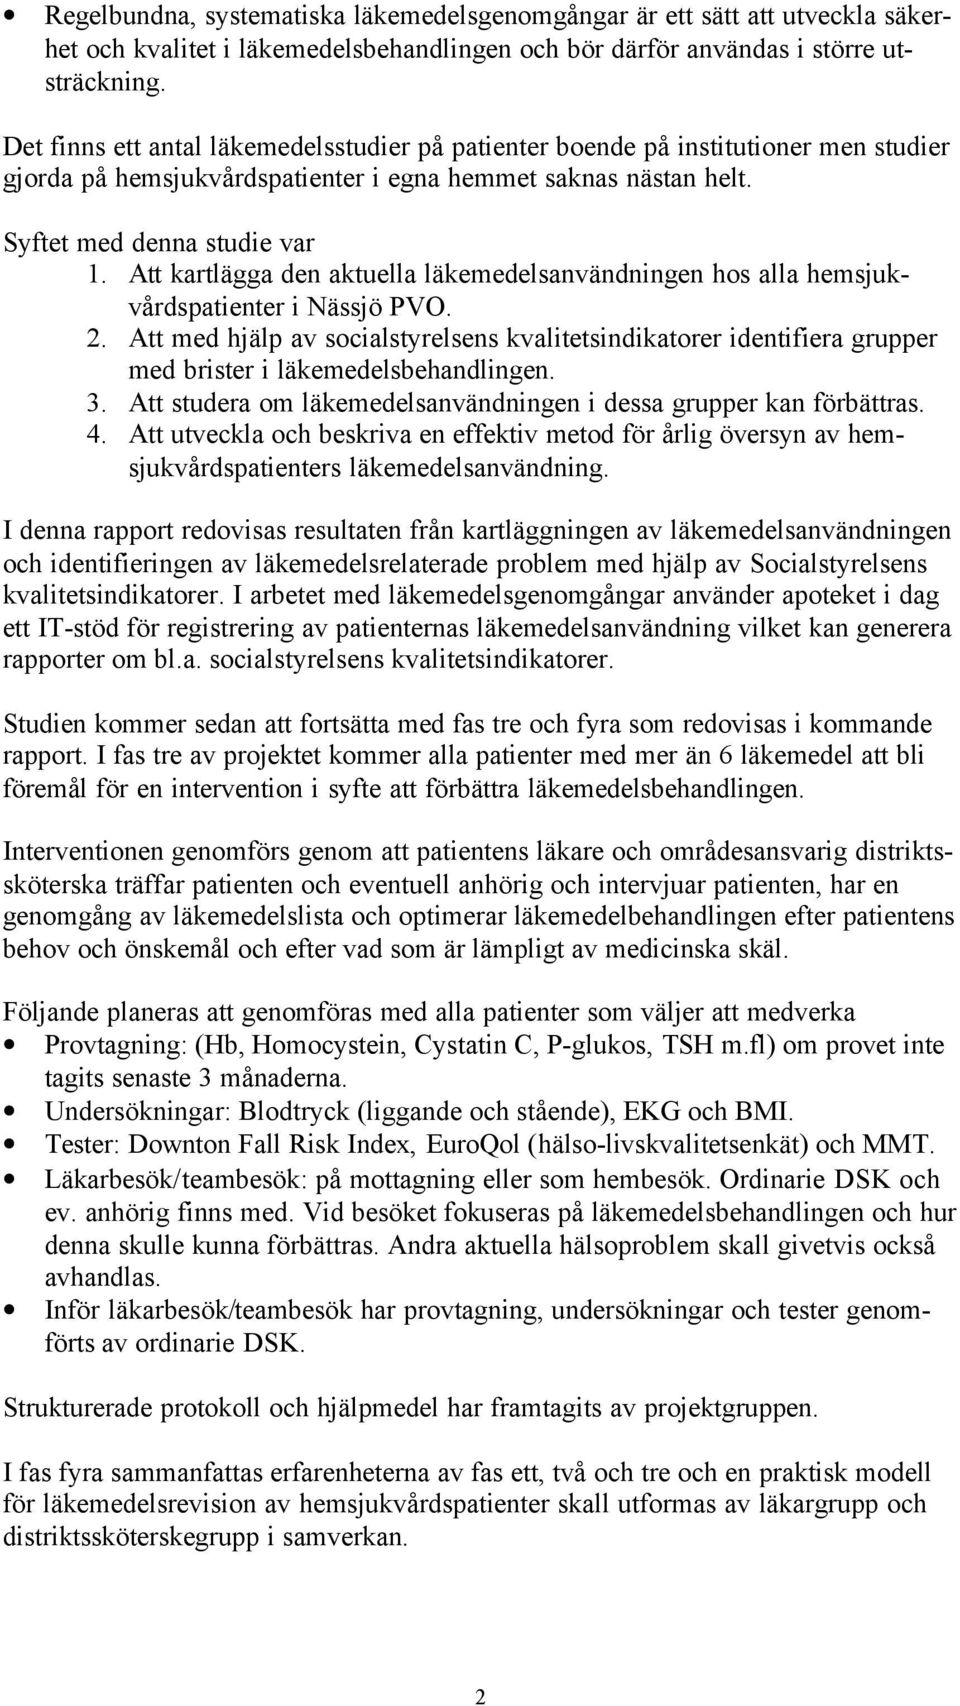 Att kartlägga den aktuella läkemedelsanvändningen hos alla hemsjukvårdspatienter i Nässjö PVO. 2.